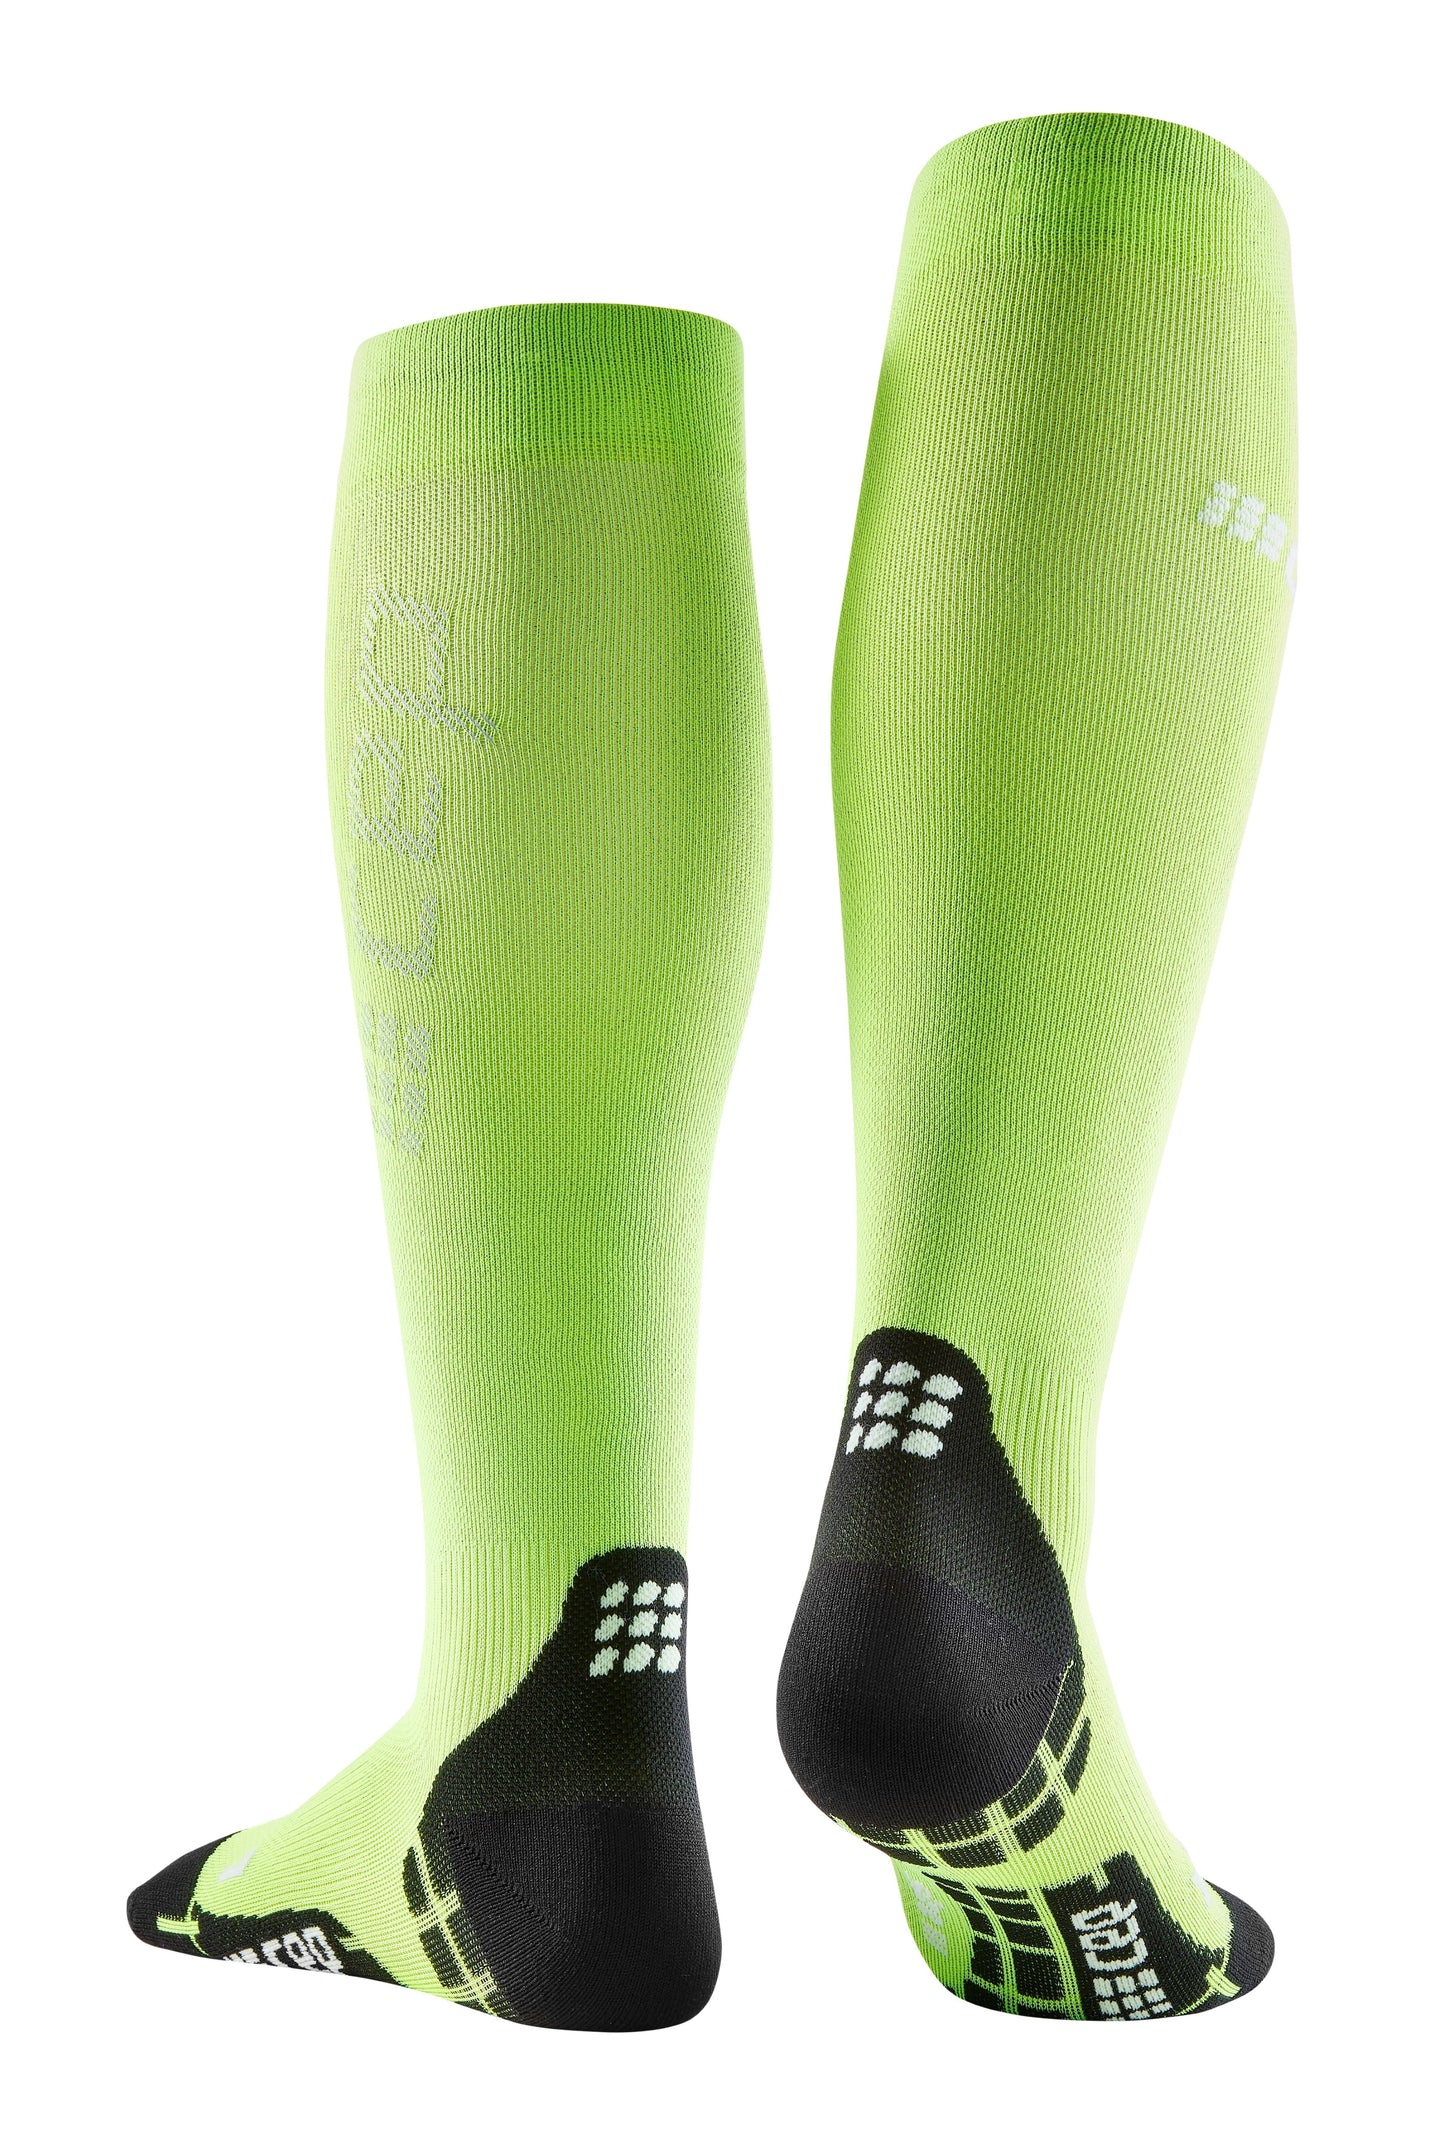 CEP Ultralight Compression Sock Tall Men's - Flash Green / Black